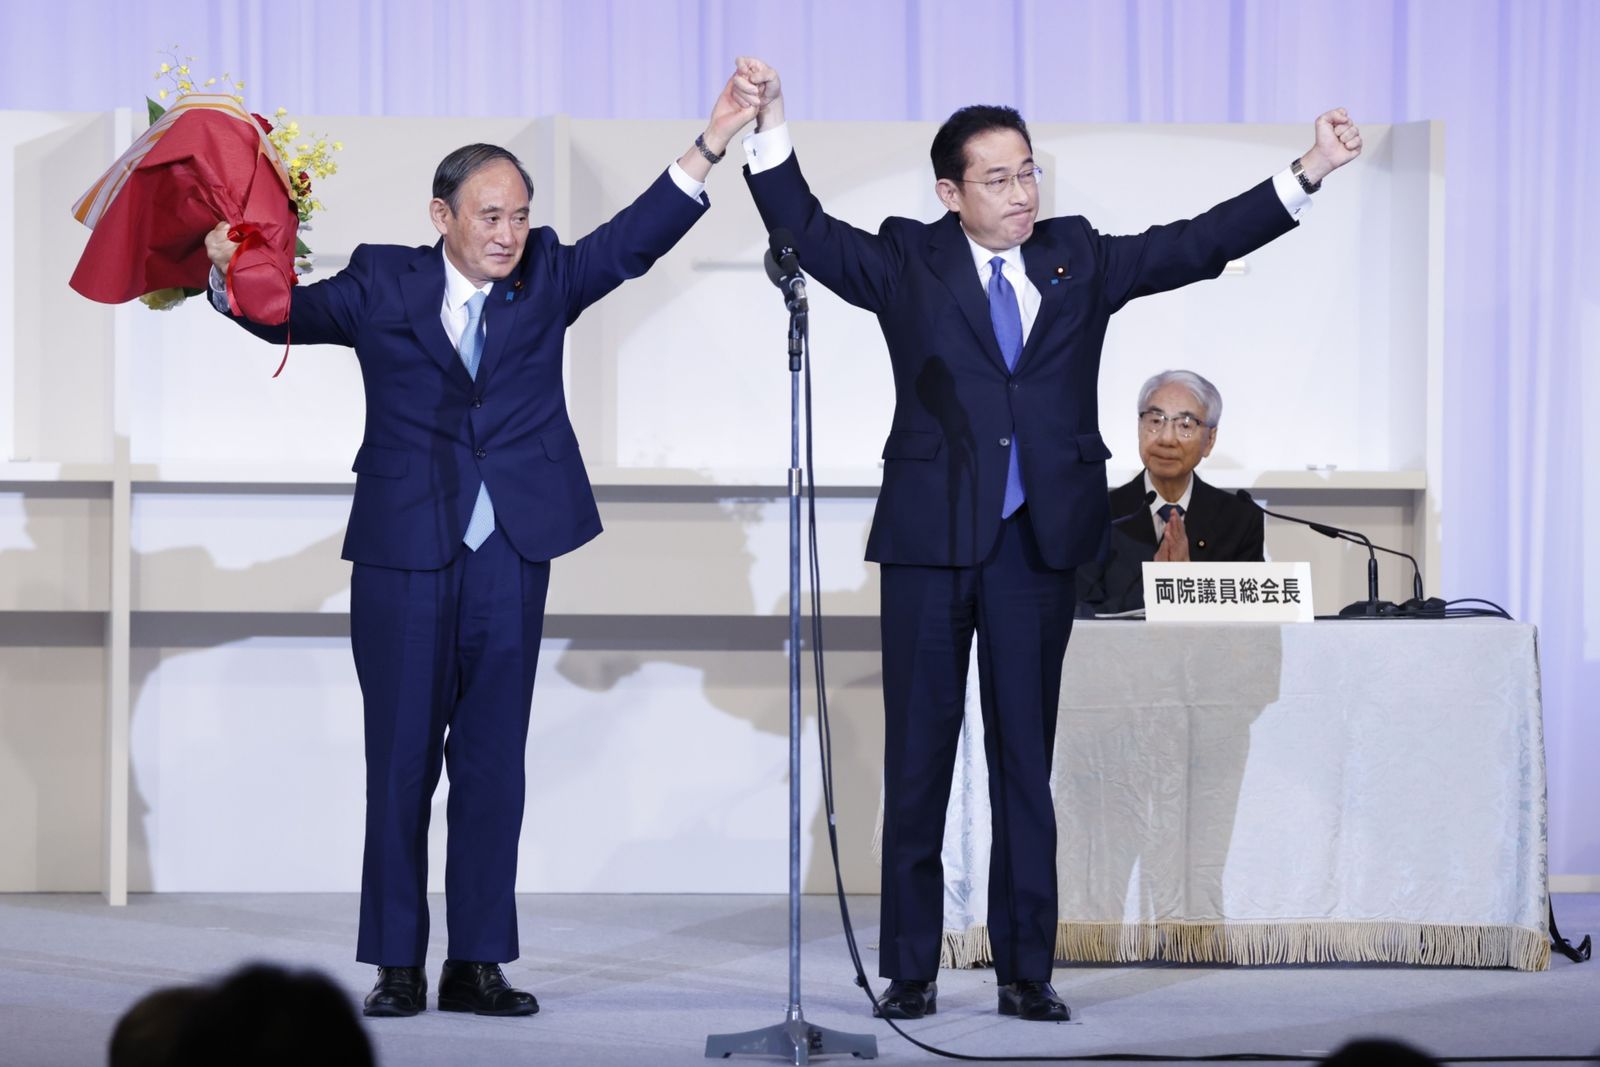 وزير الخارجية الياباني السابق فوميو كيشيدا (يمين) ورئيس الوزراء المنتهية ولايته يوشيهيدي سوغا بعد فوز الأول في الانتخابات على زعامة الحزب الديمقراطي الليبرالي الحاكم في طوكيو - 29 سبتمبر 2021 - Bloomberg